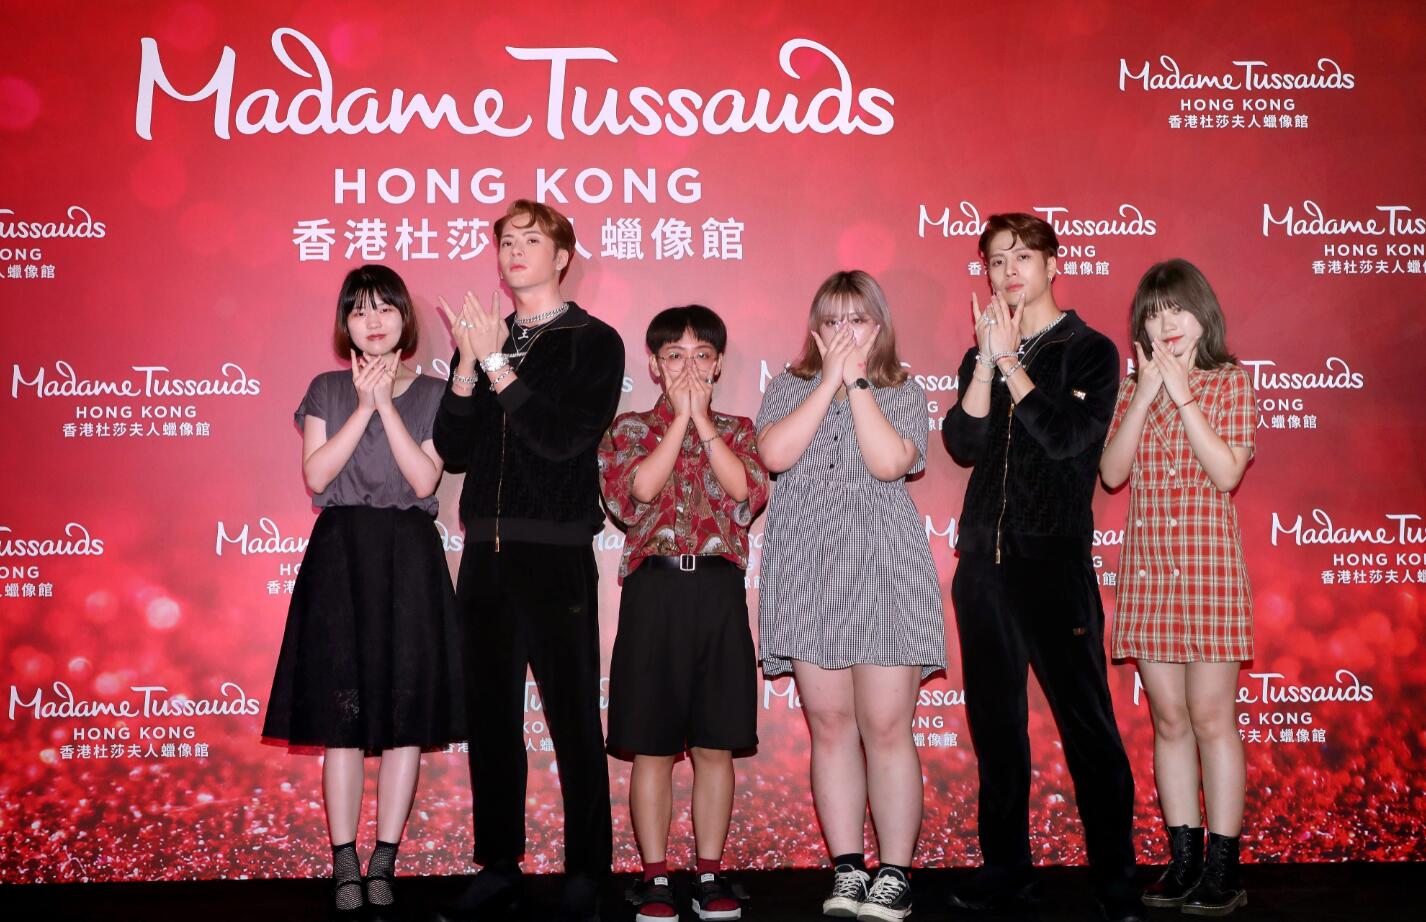 王嘉尔全球首尊蜡像香港杜莎揭幕 定制两大互动体验升级宠粉福利